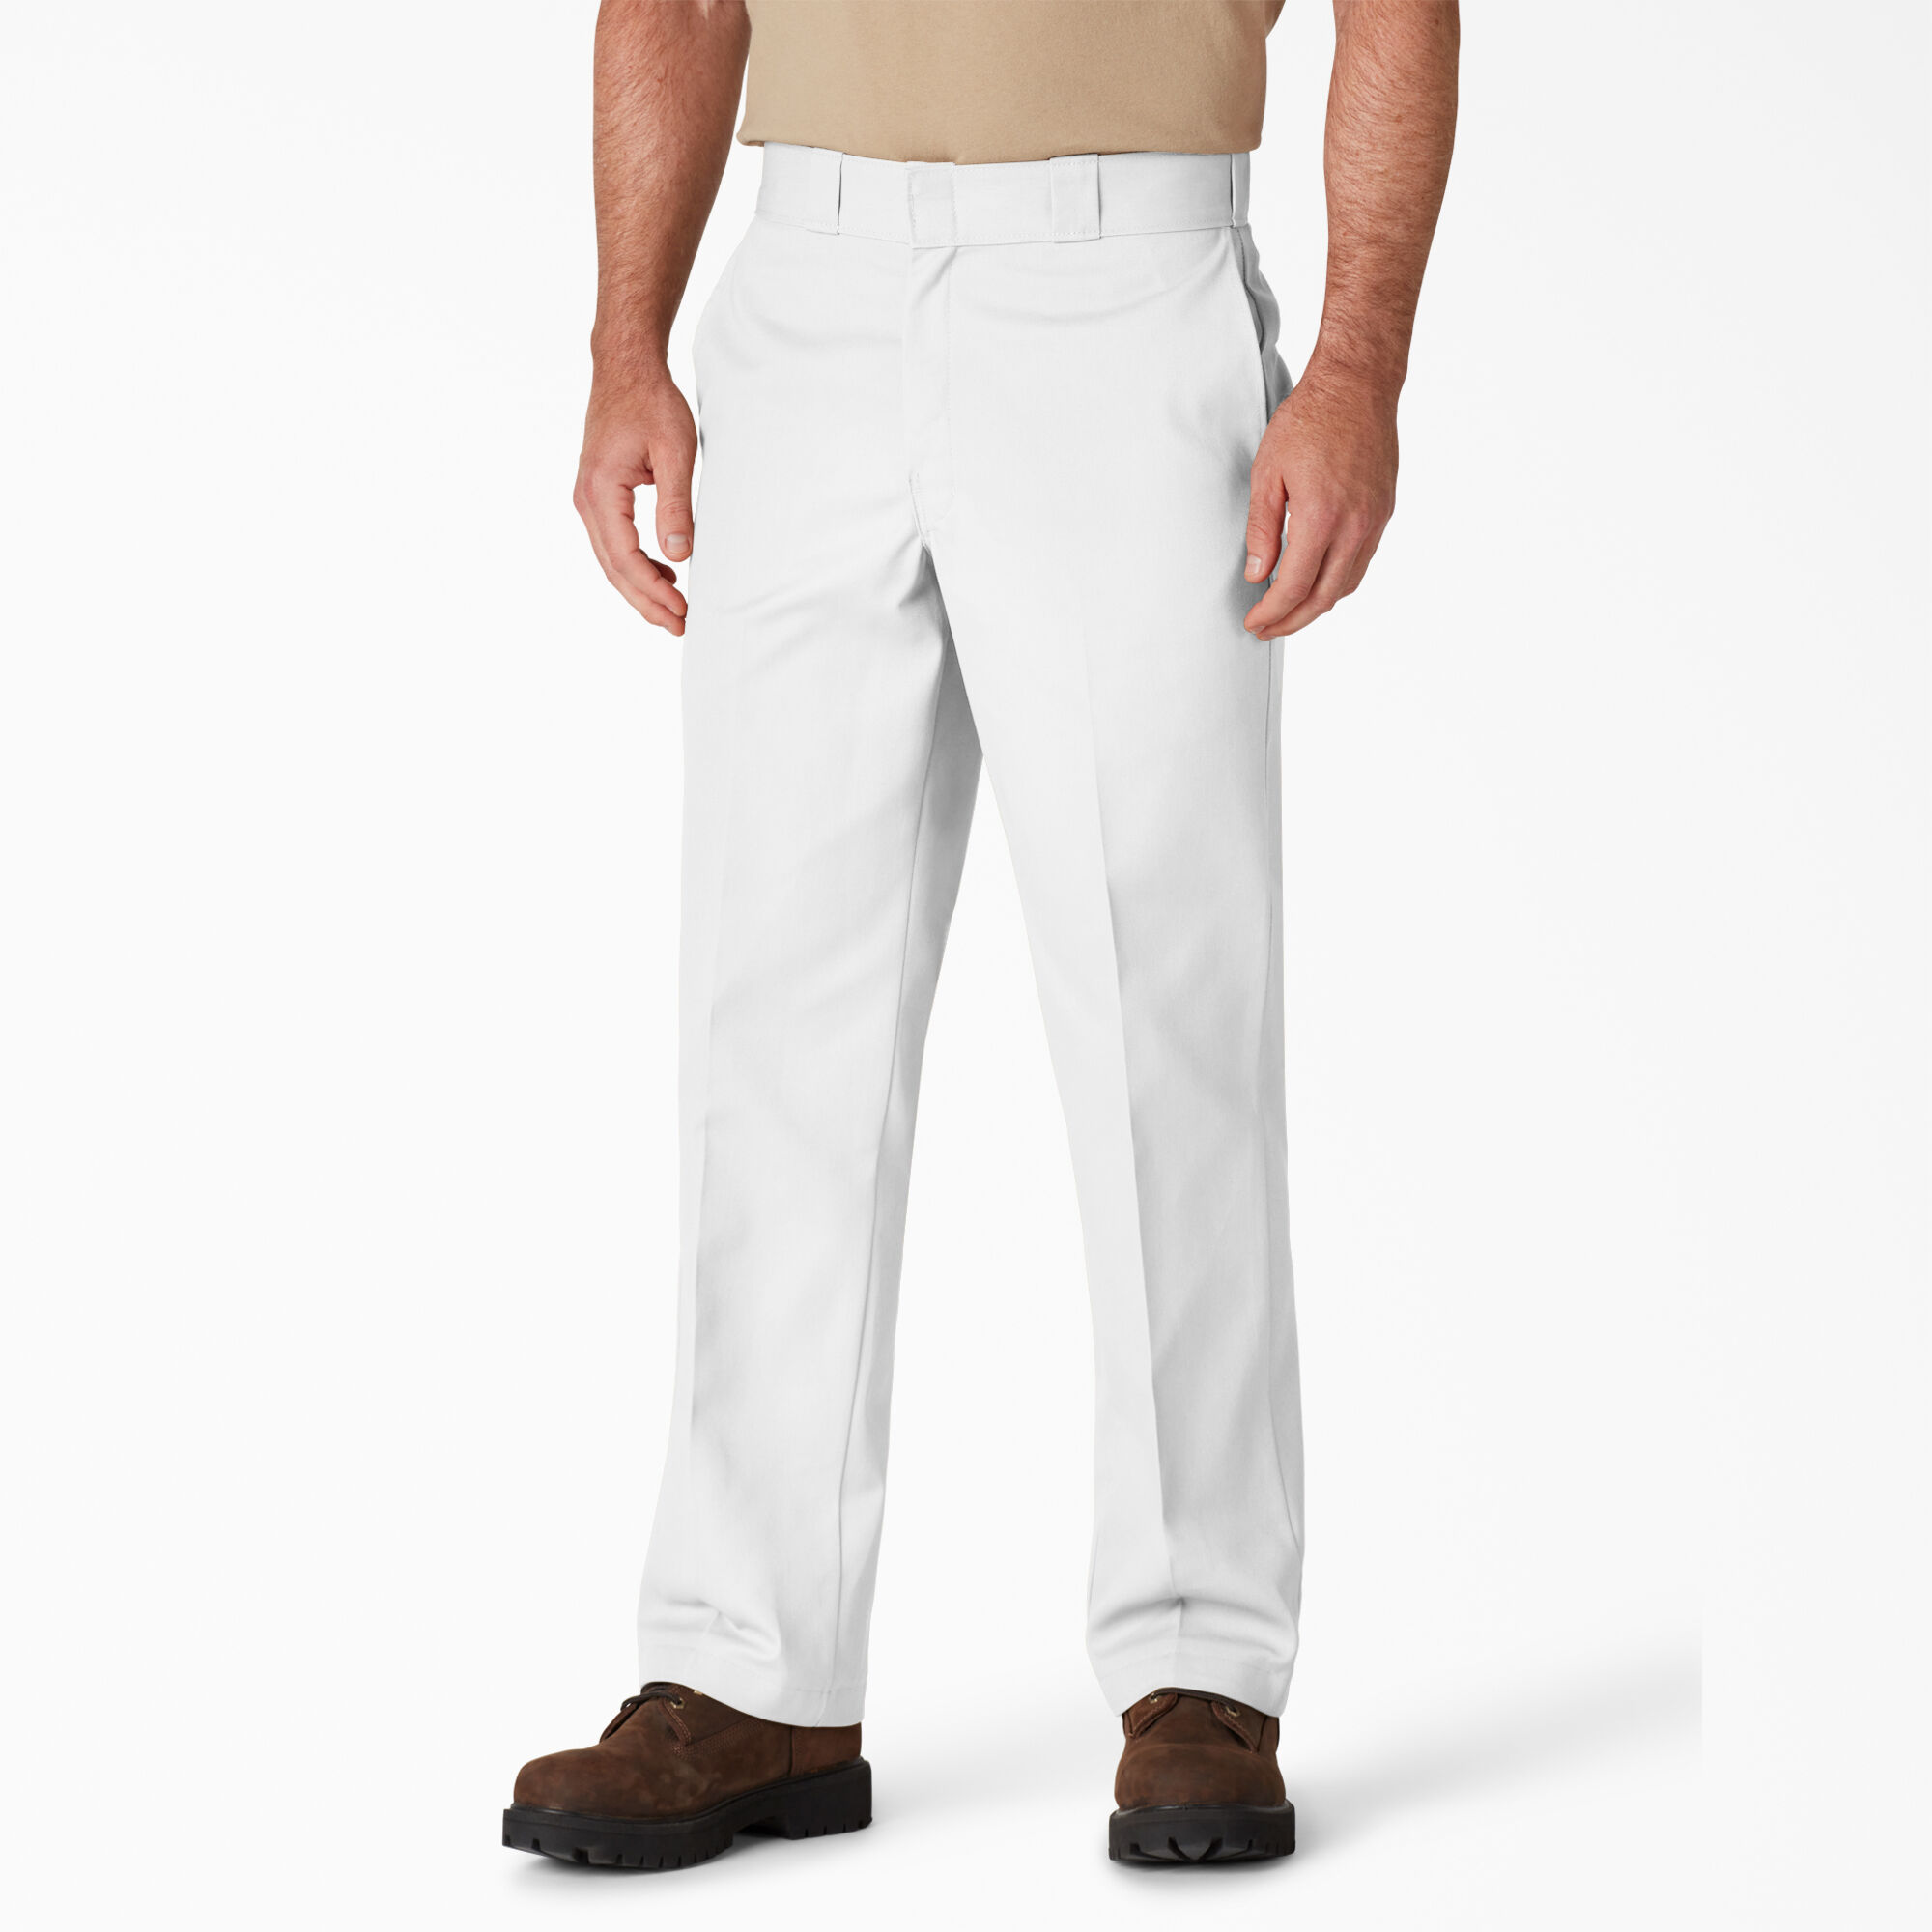 mens white pants size 44